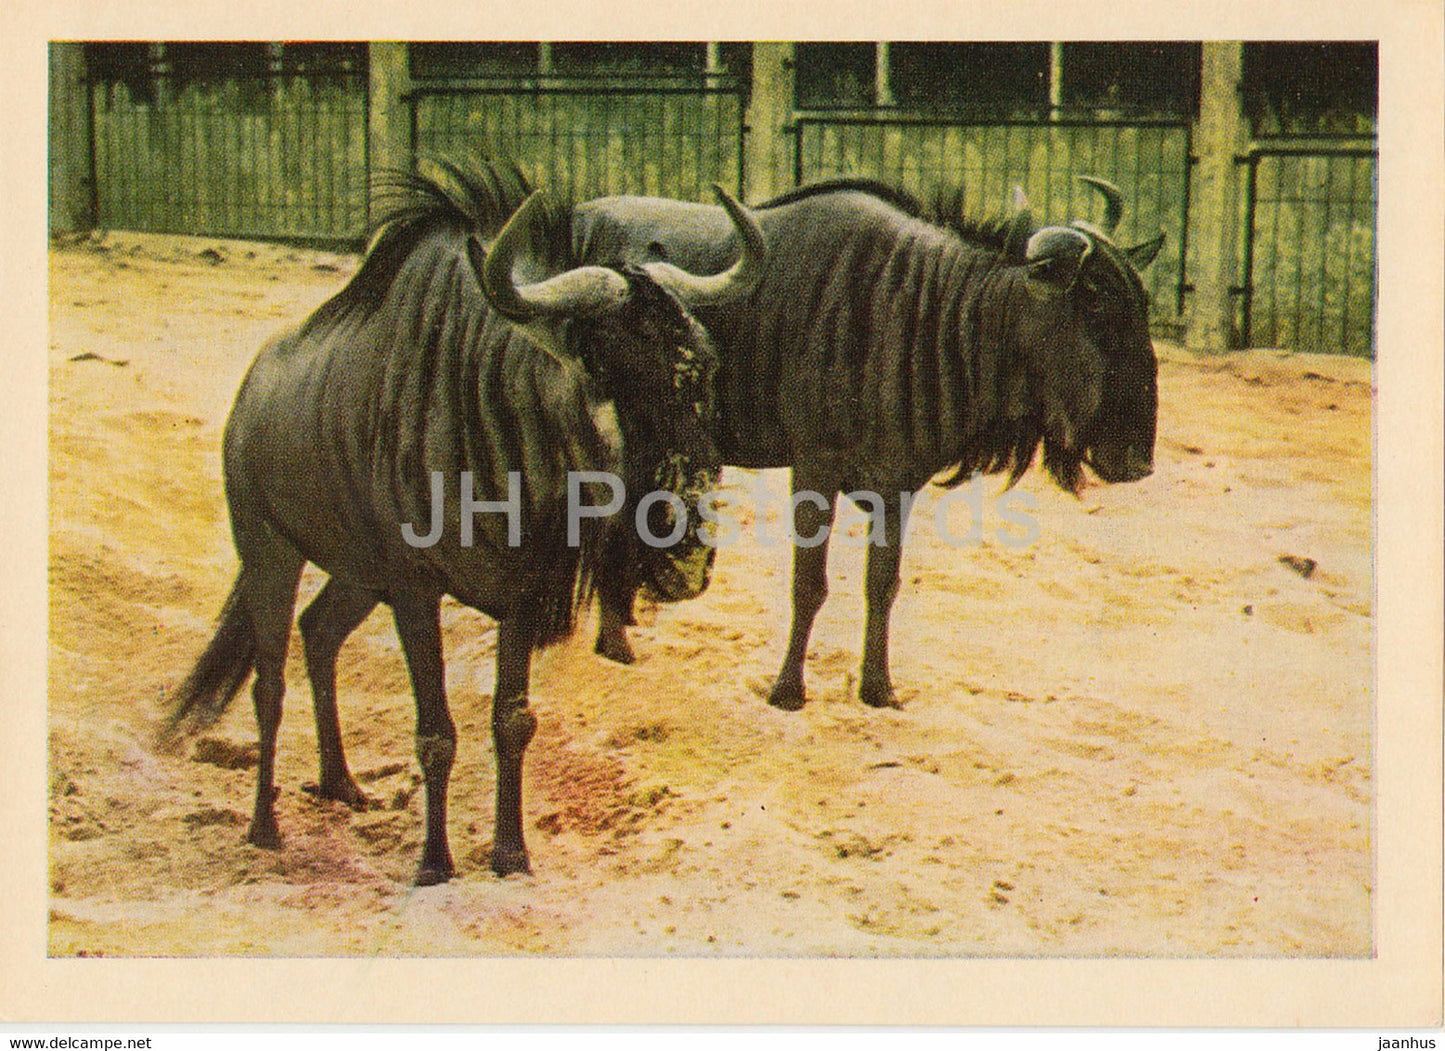 Riga Zoo - Wildebeest - Latvia USSR - unused - JH Postcards